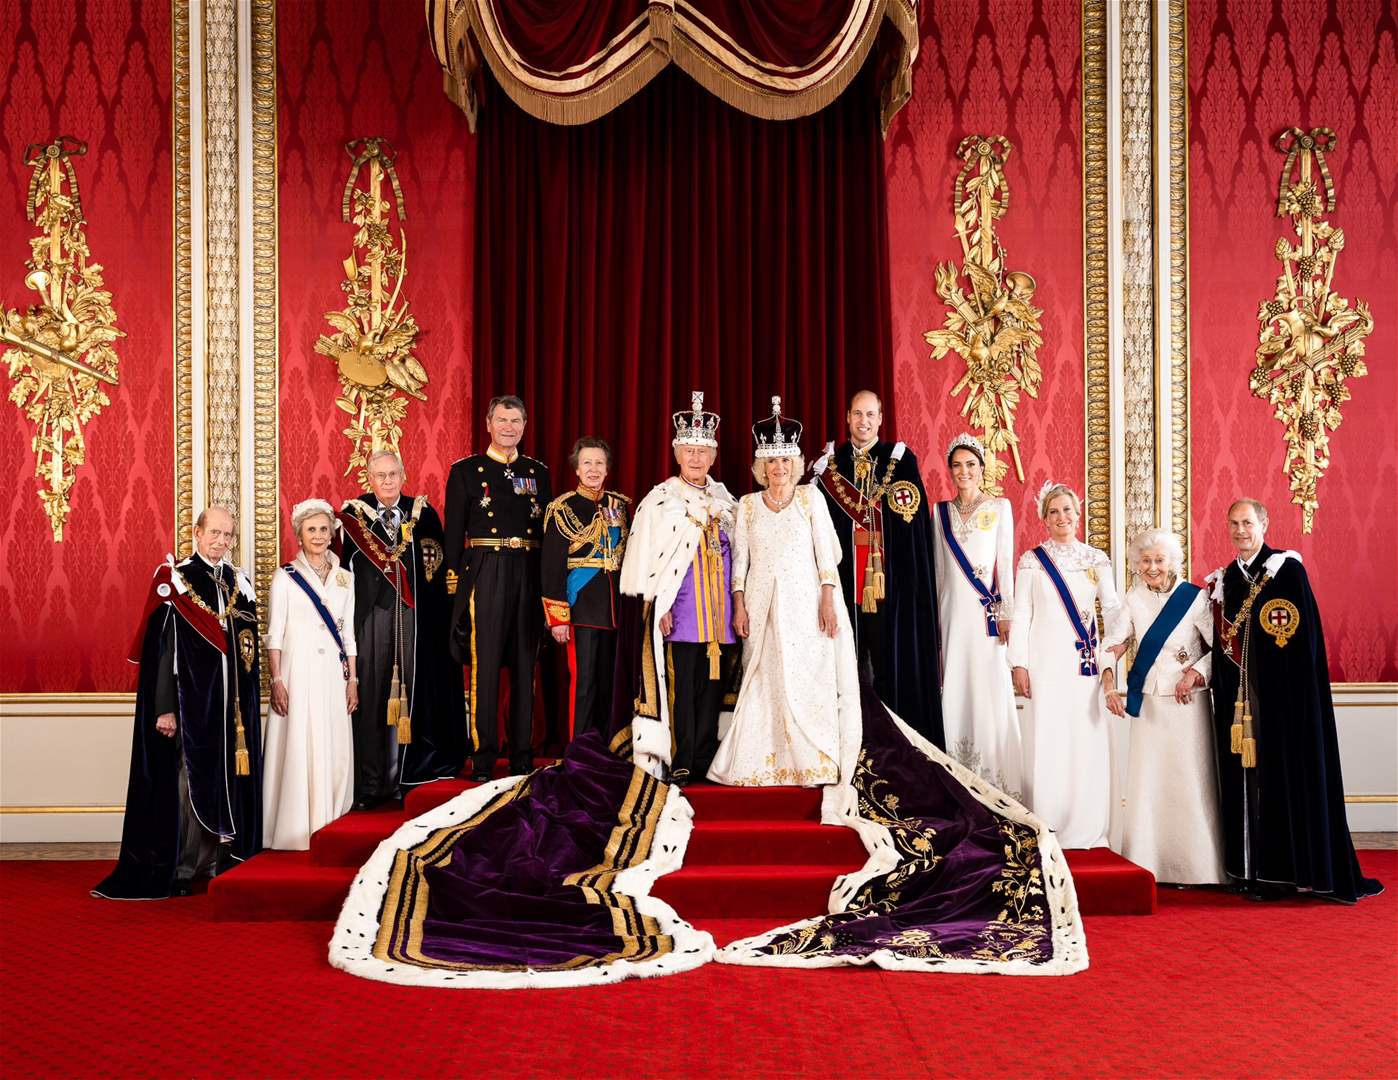     قصر باكنغهام ينشر الصورة الرسميّة الأولى للعائلة الملكيّة بعد تتويج ملك بريطانيا 